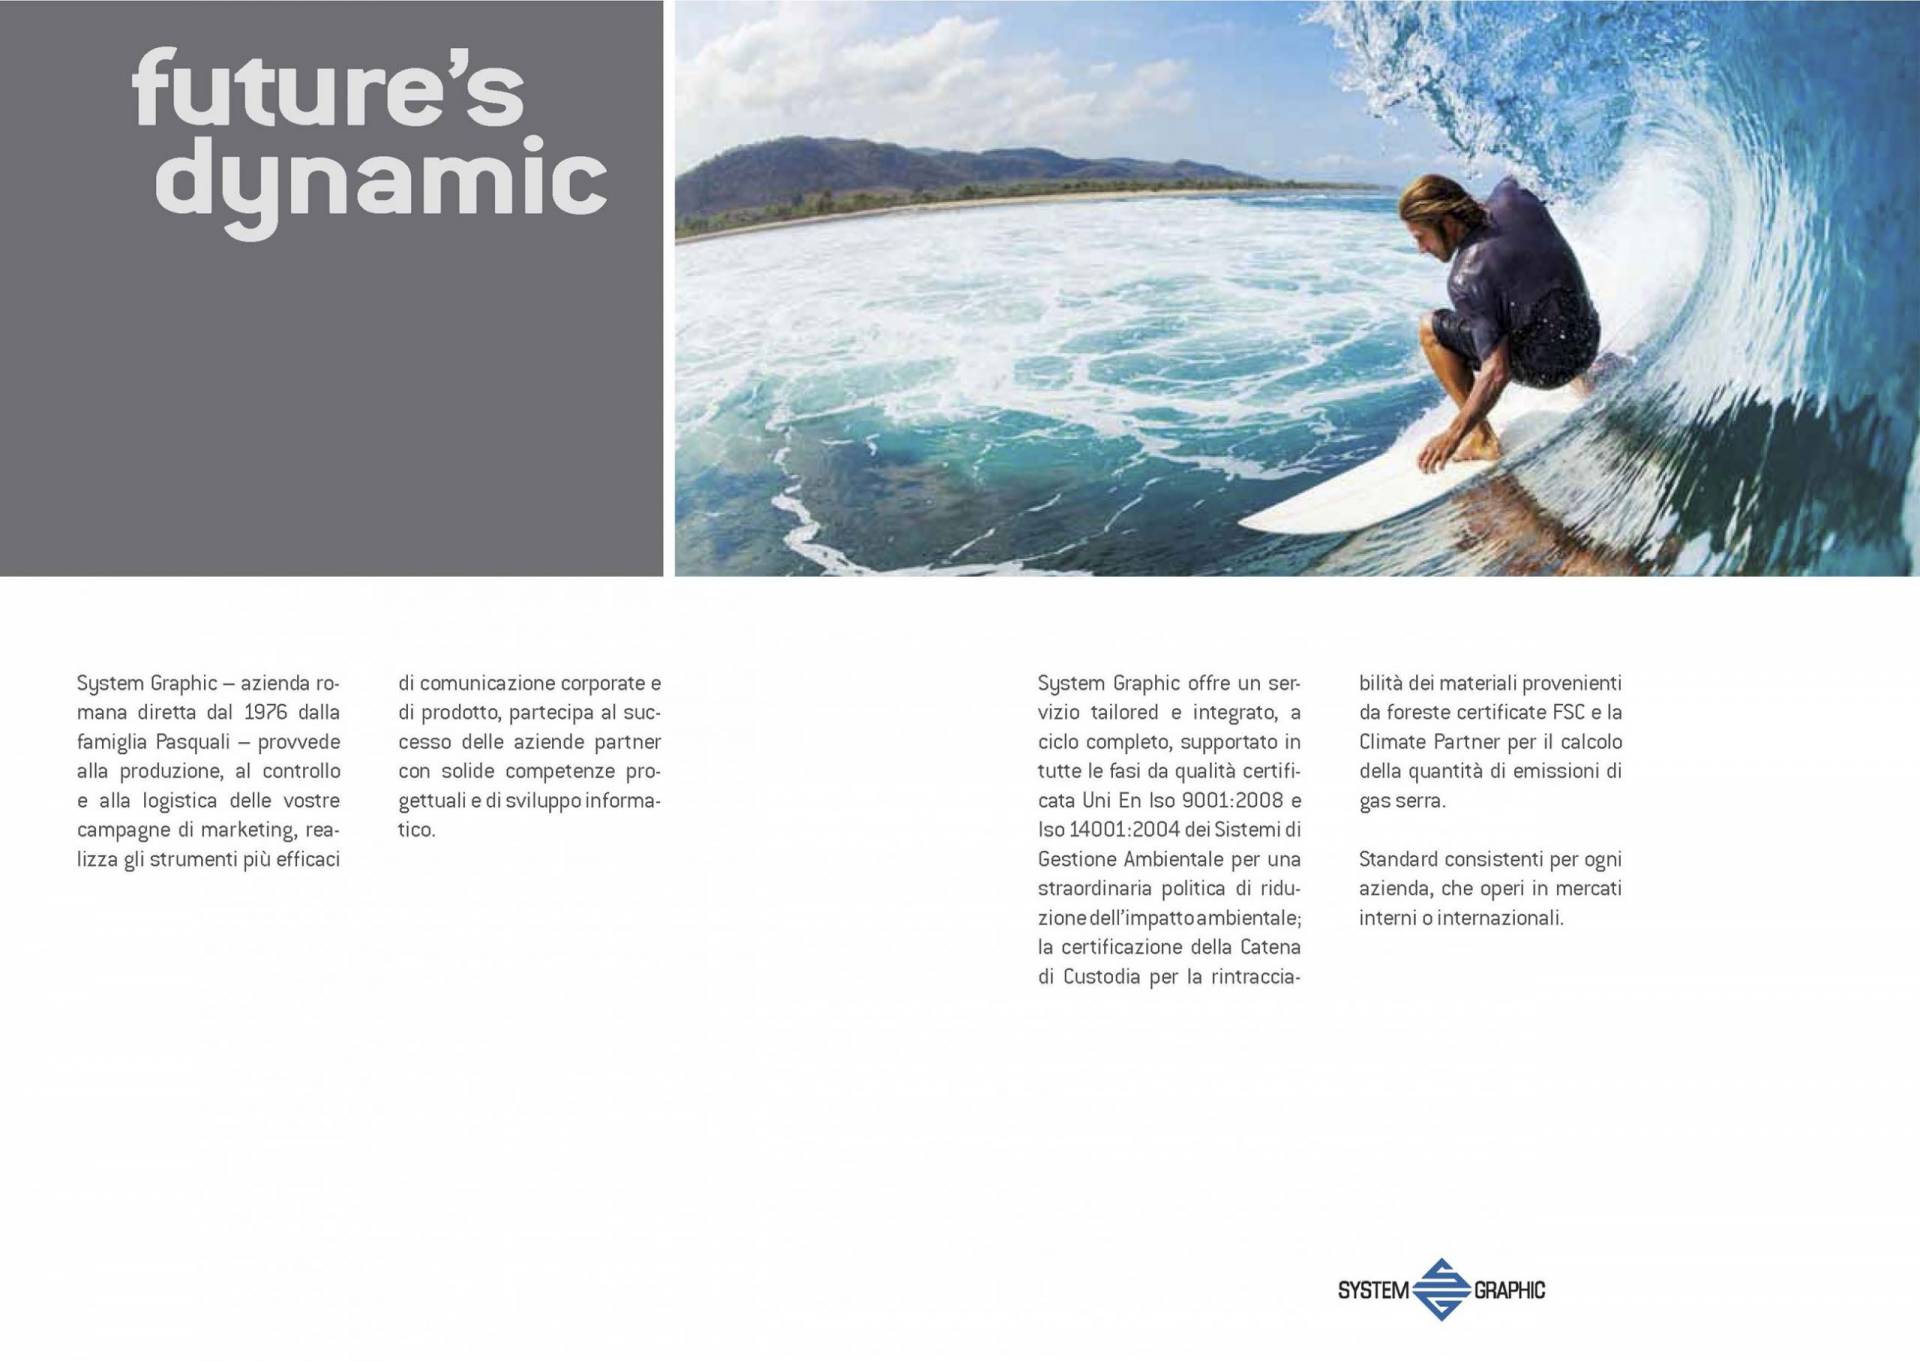 BVC, System Graphic marketing e comunicazione, future's dynamic